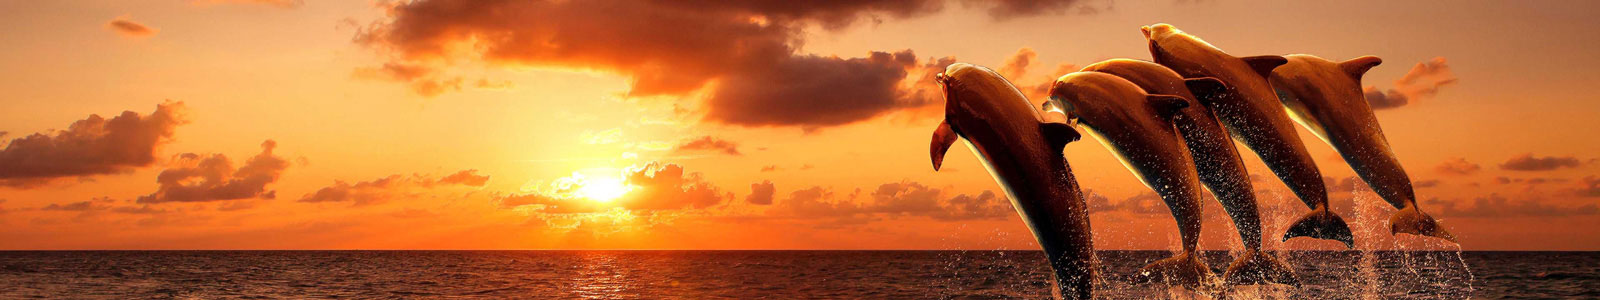 №4347 - Дельфины на закате, изображение с имитацией рисования пастелью